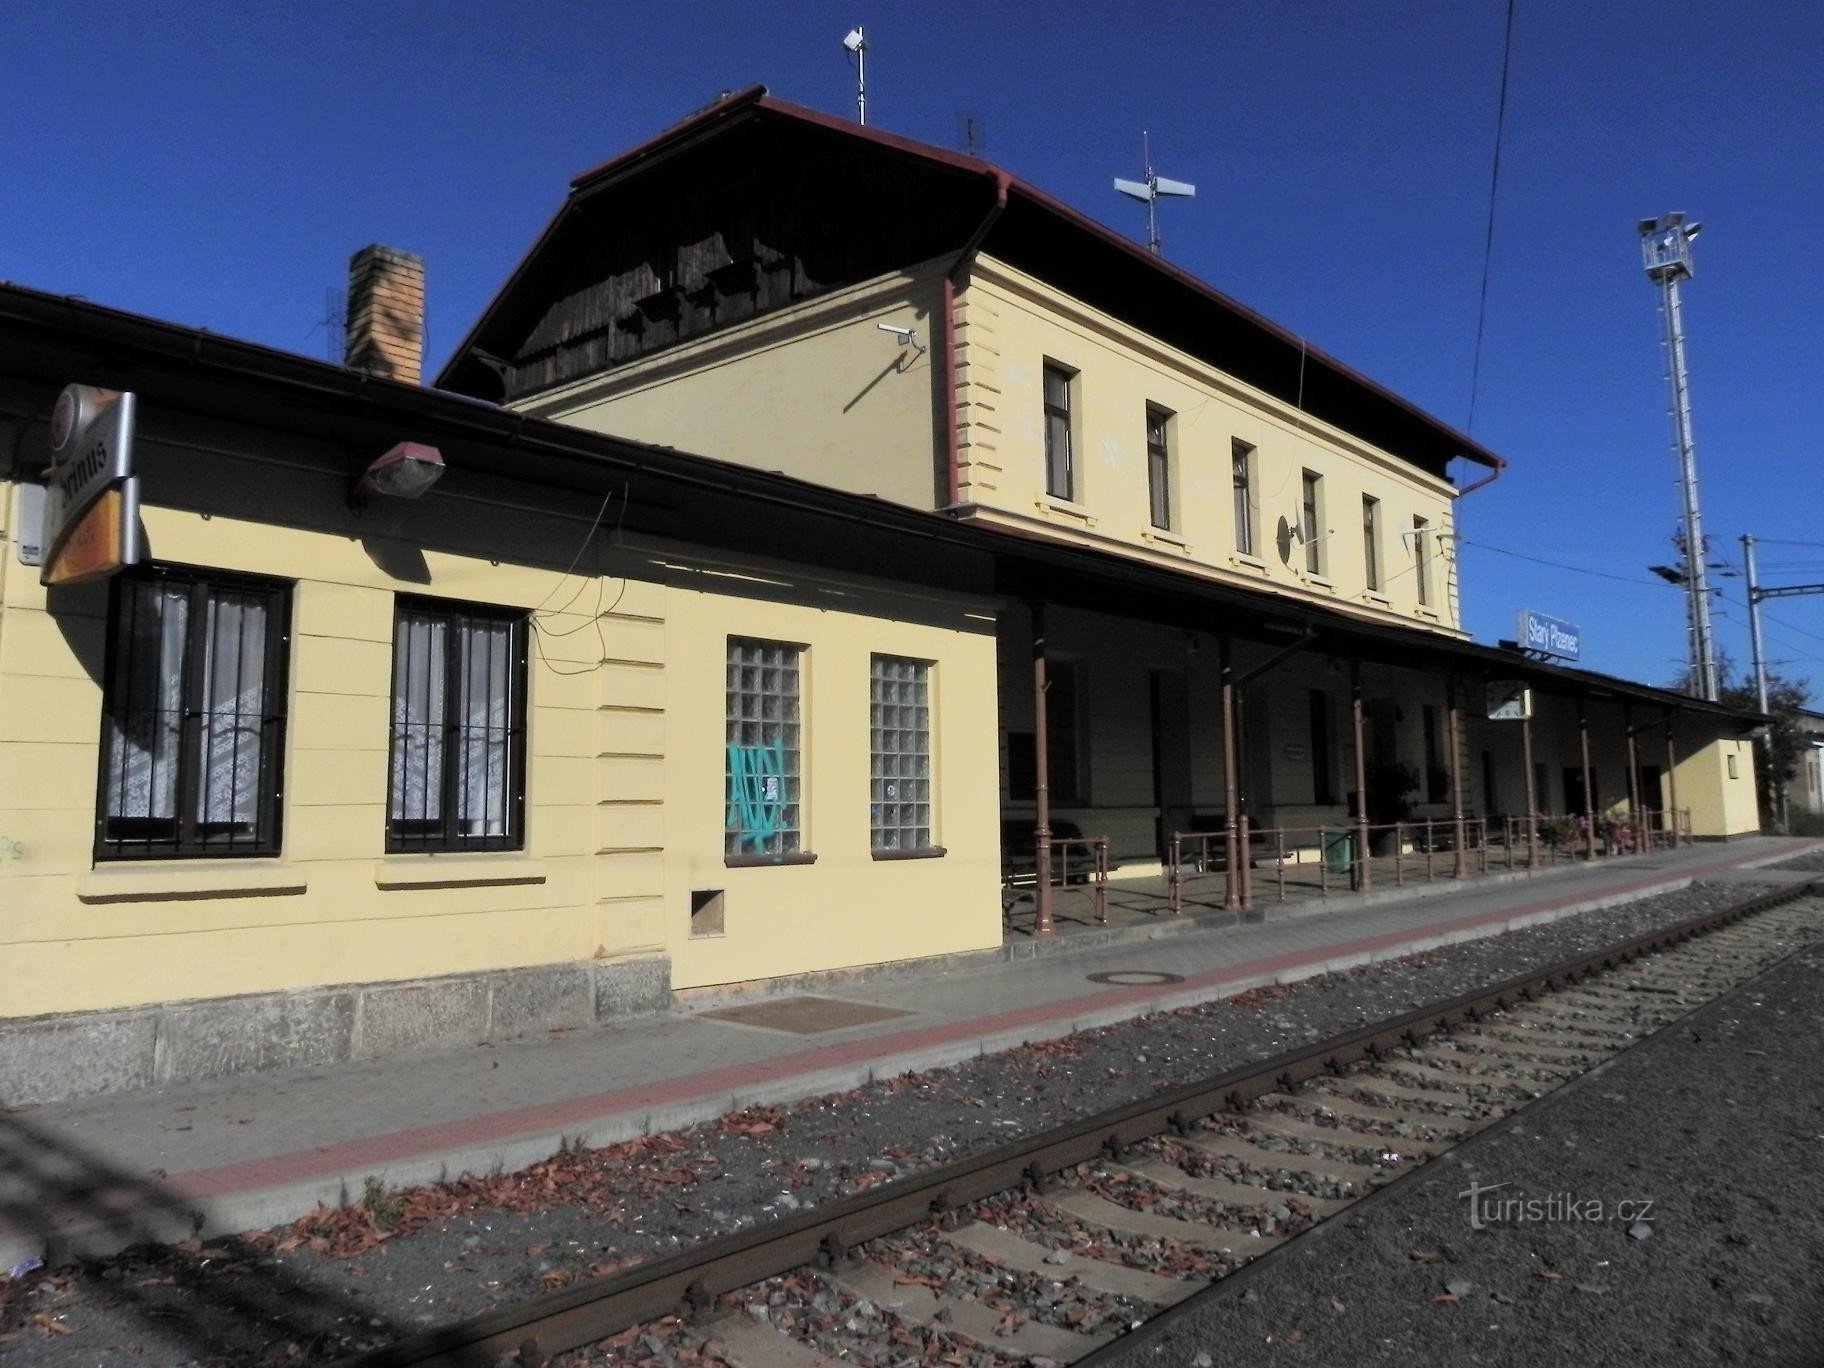 Starý Plzenec, Bahnhof